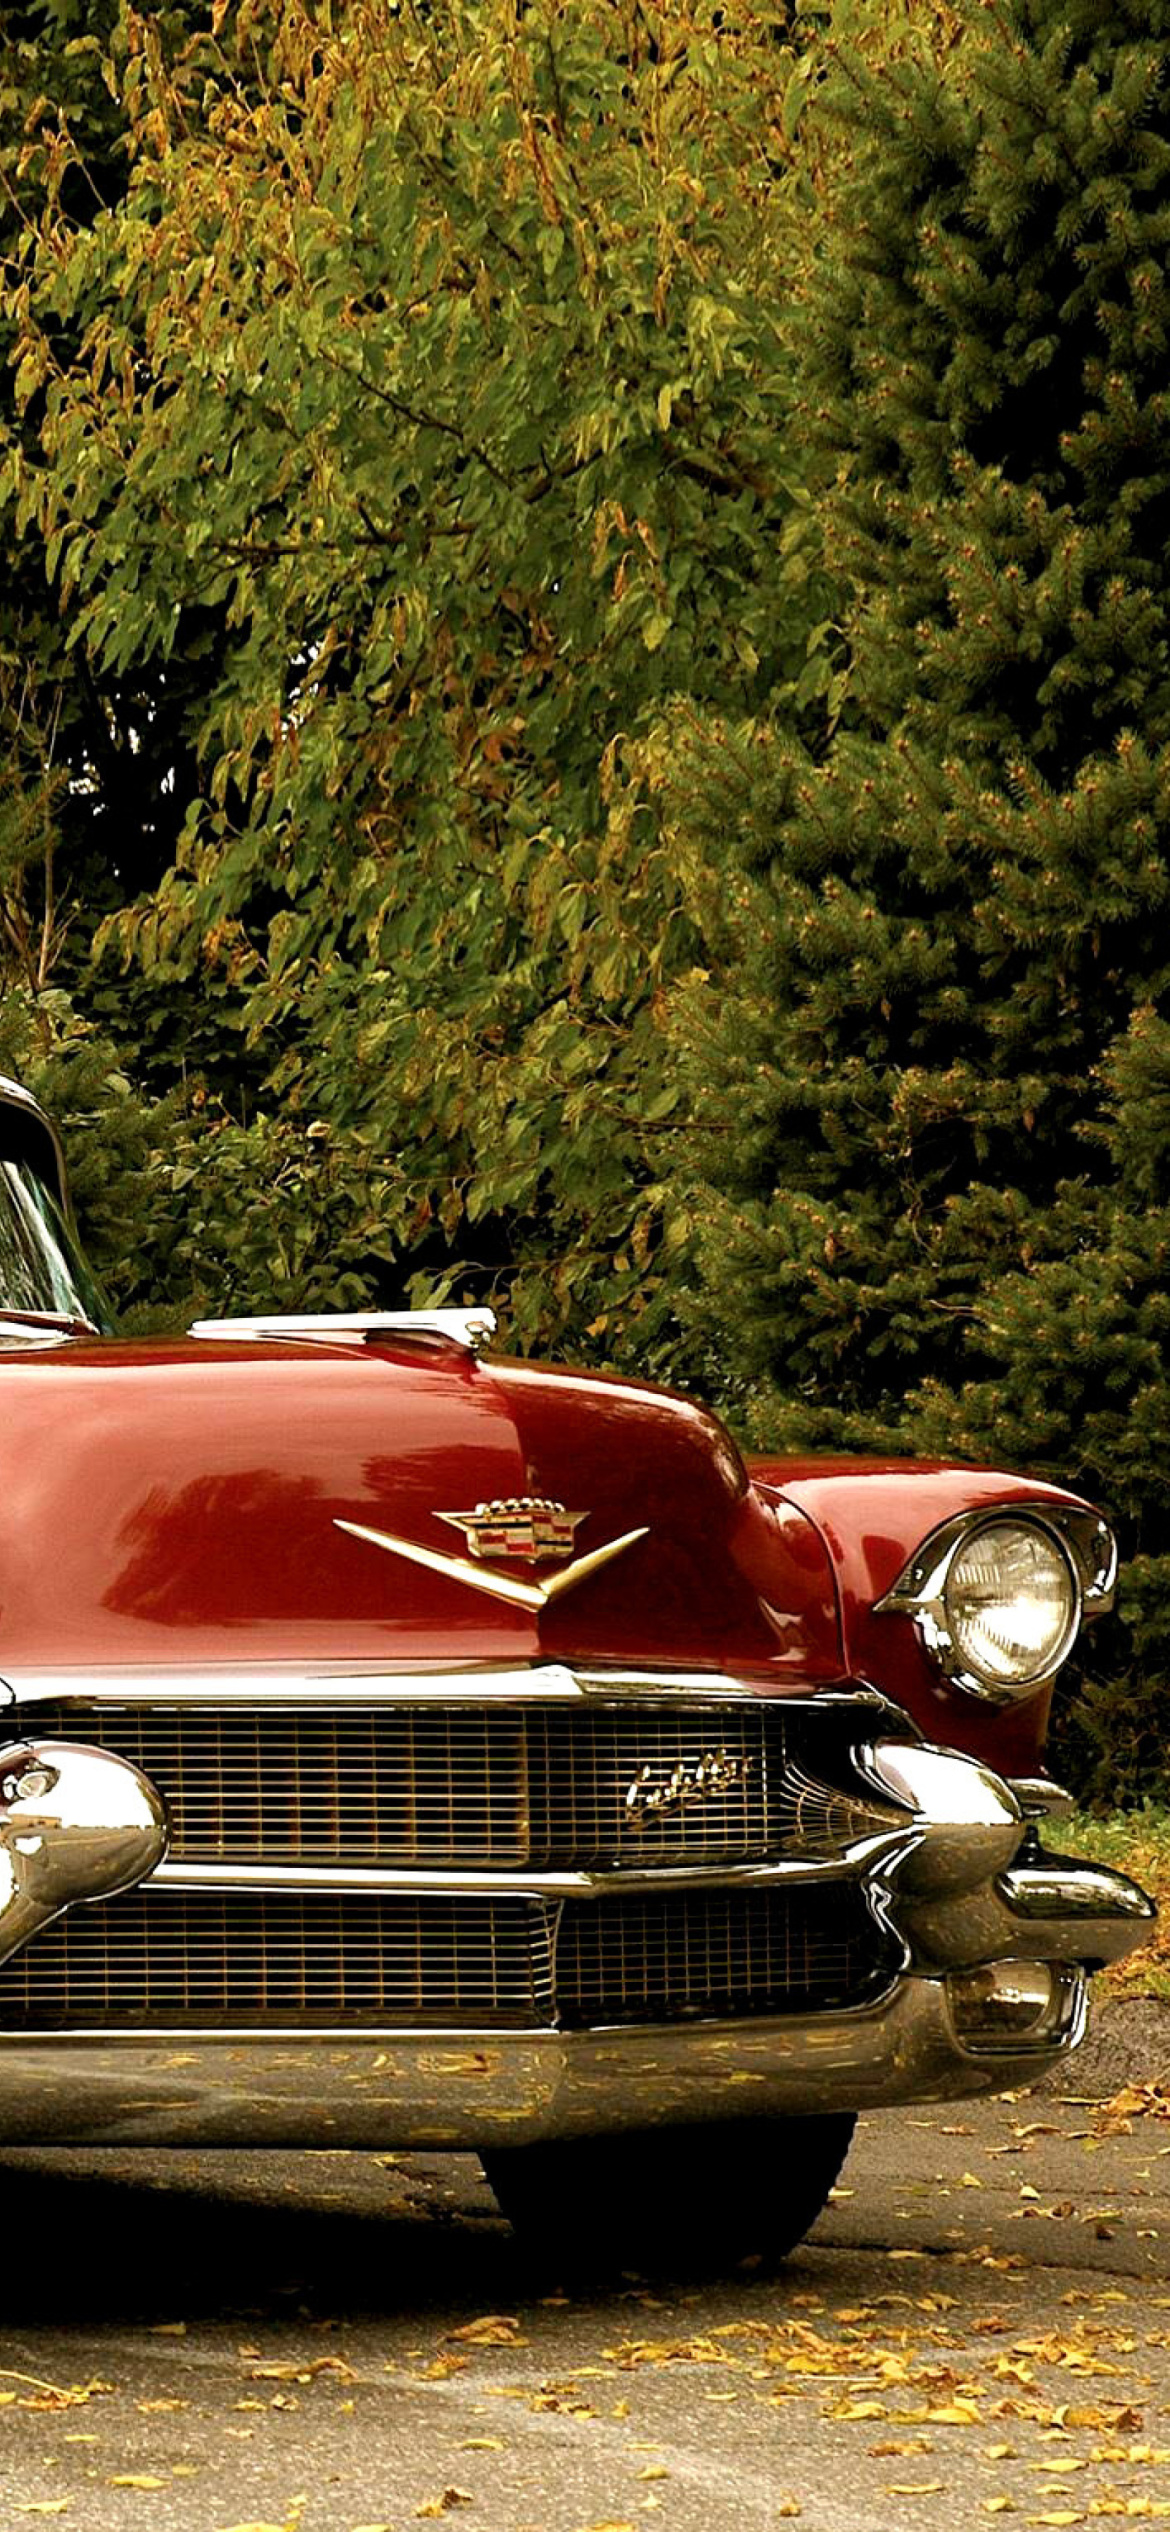 1956 Cadillac Maharani - Fondos de pantalla gratis para iPhone 11